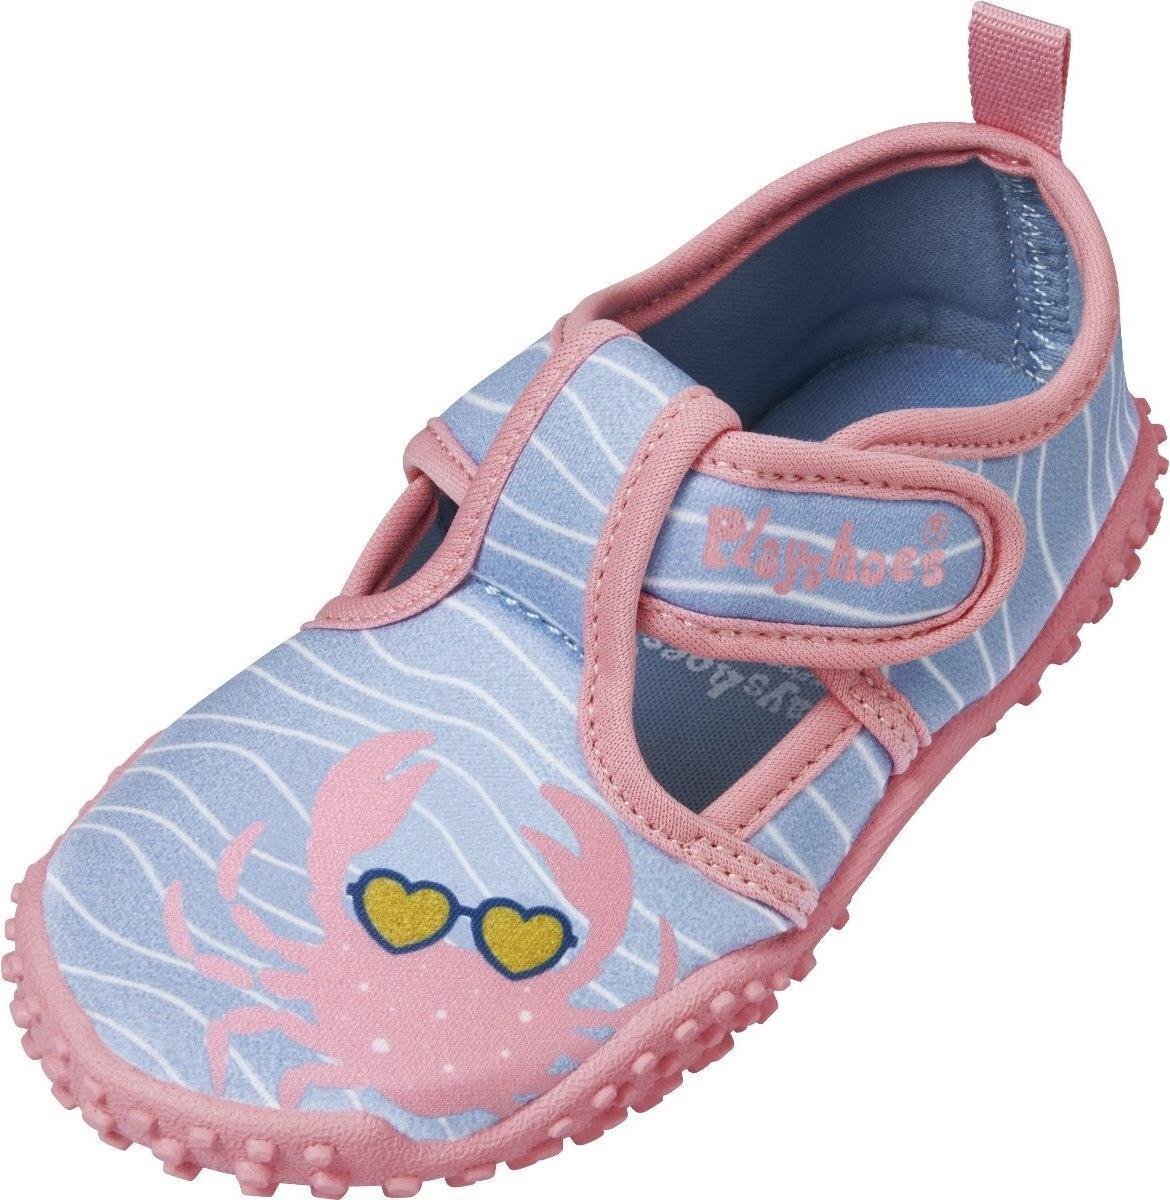 Playshoes waterschoen Krebs meisjes antislip roze/blauw